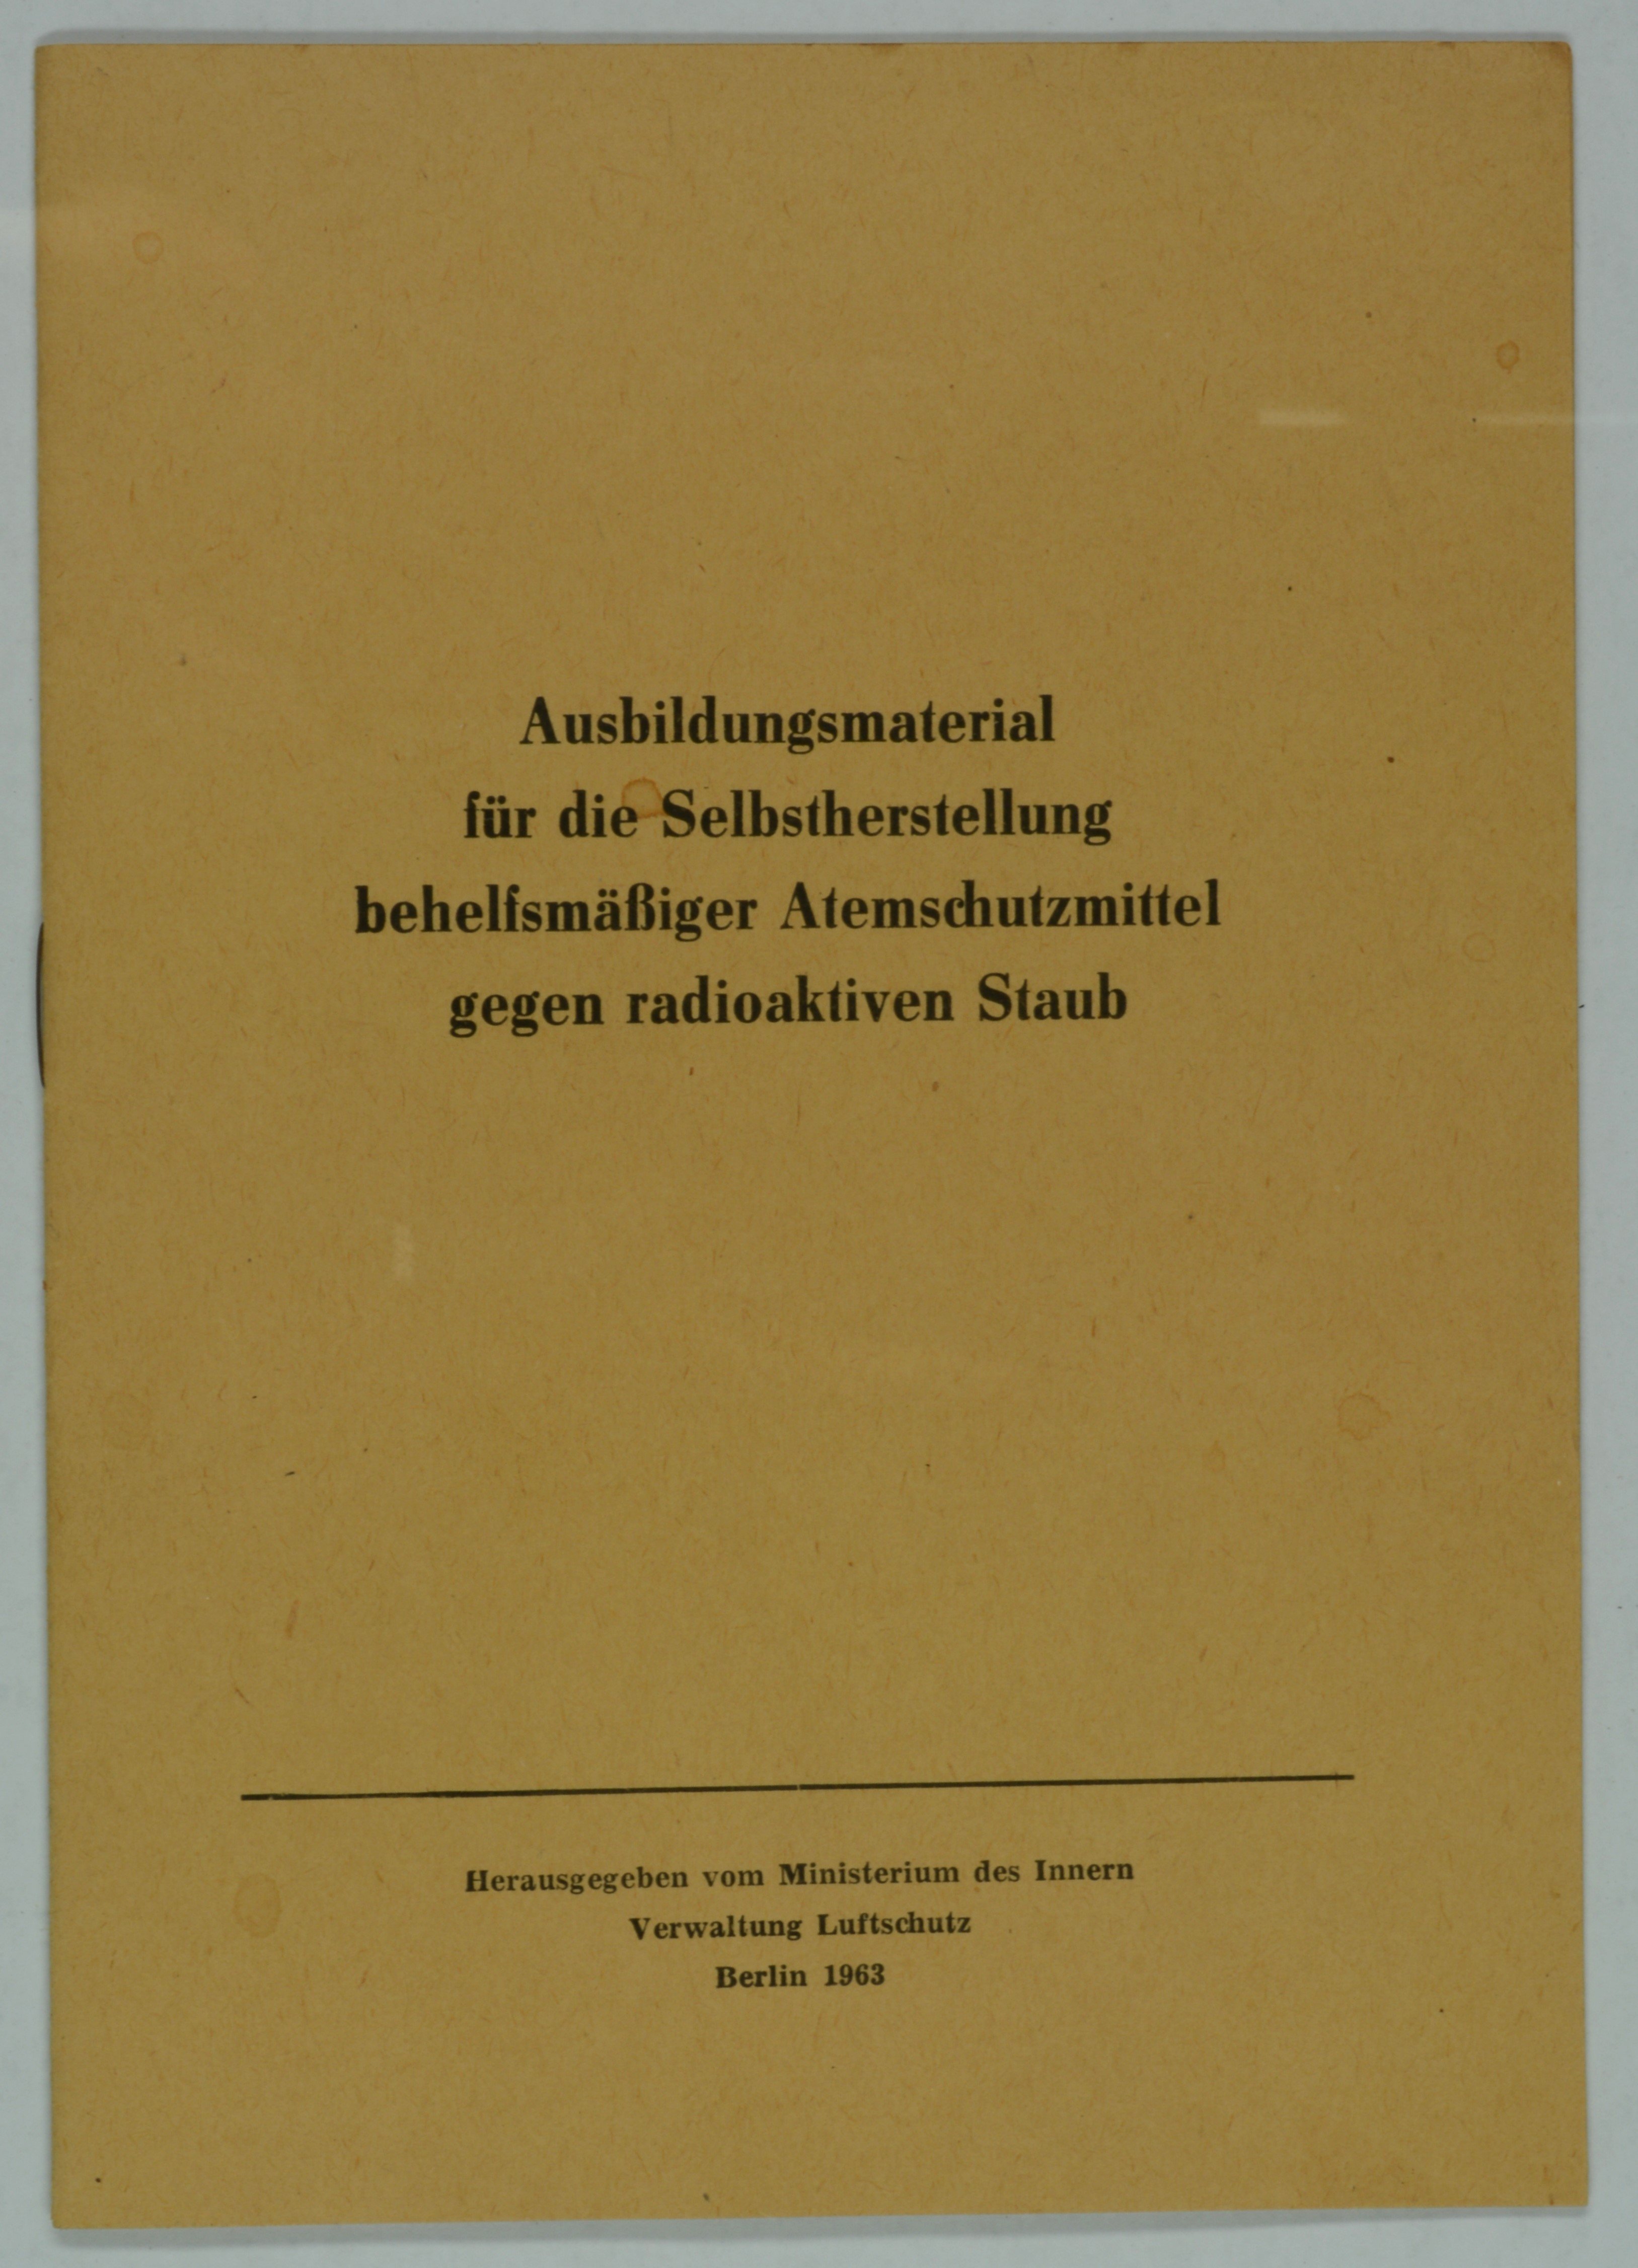 Broschüre "Ausbildungsmaterial für die Selbstherstellung" (DDR Geschichtsmuseum im Dokumentationszentrum Perleberg CC BY-SA)